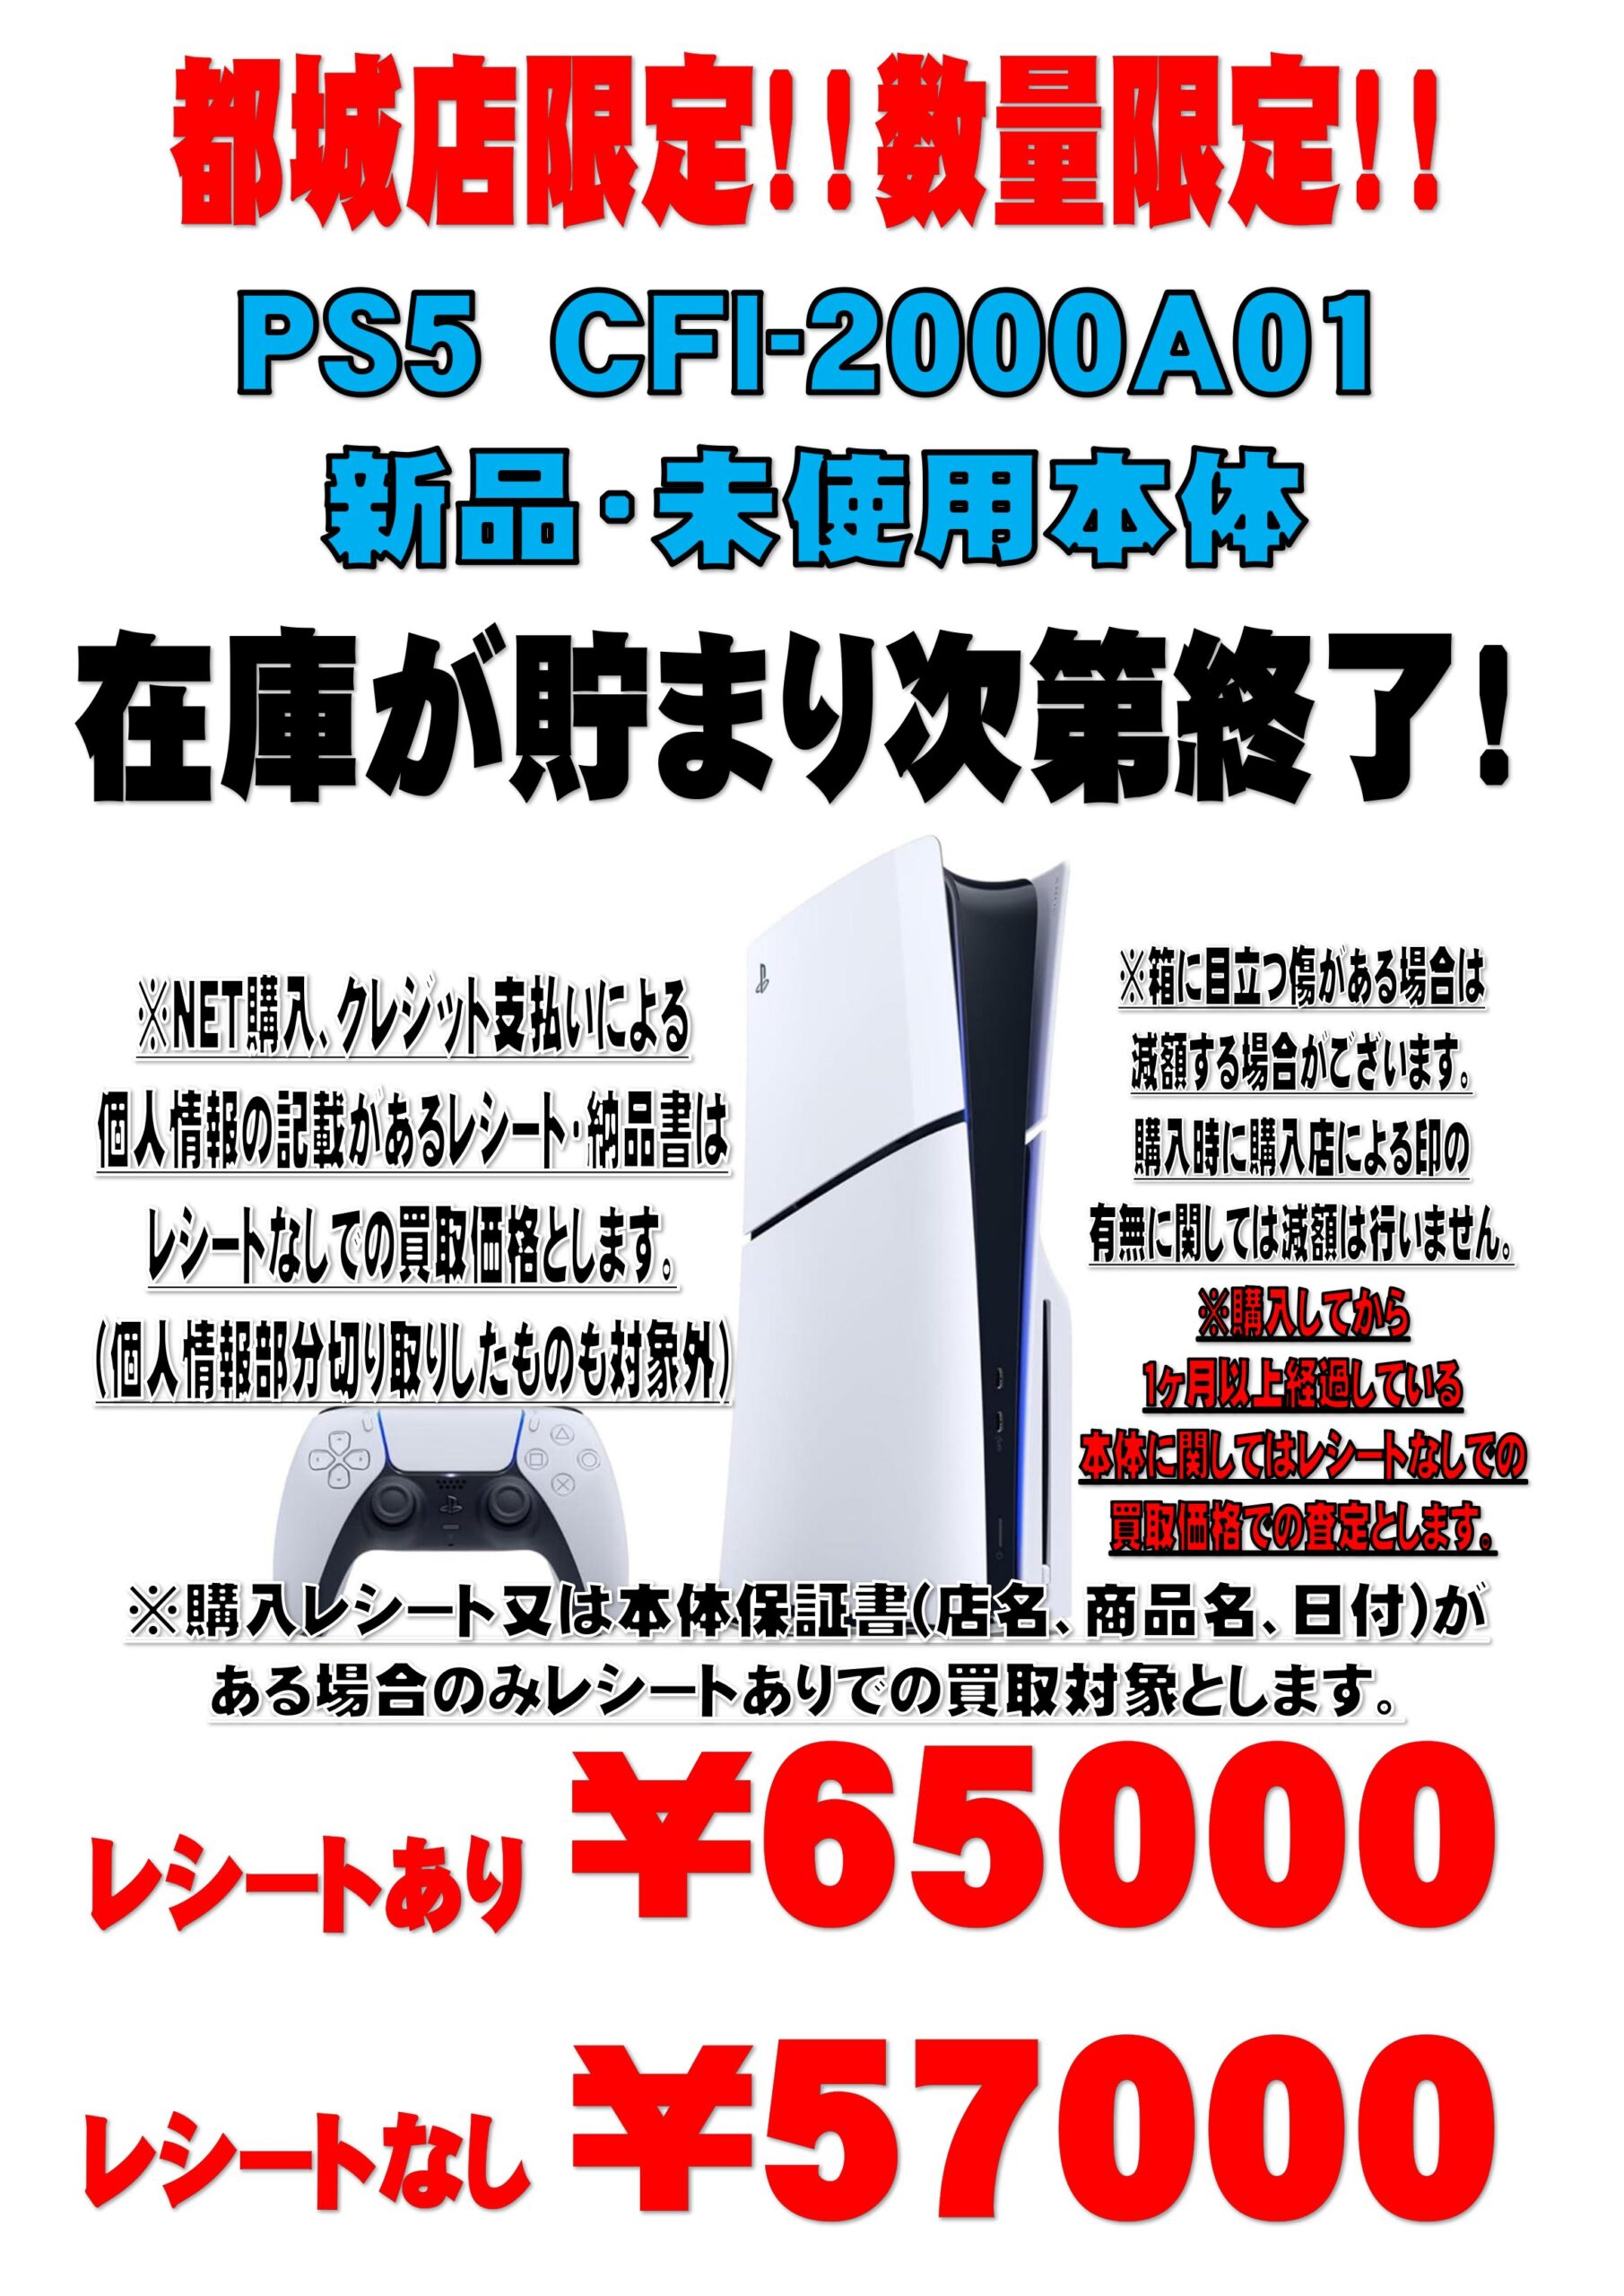 新品PS5 新型 本体 PlayStation5 CFI-2000A01